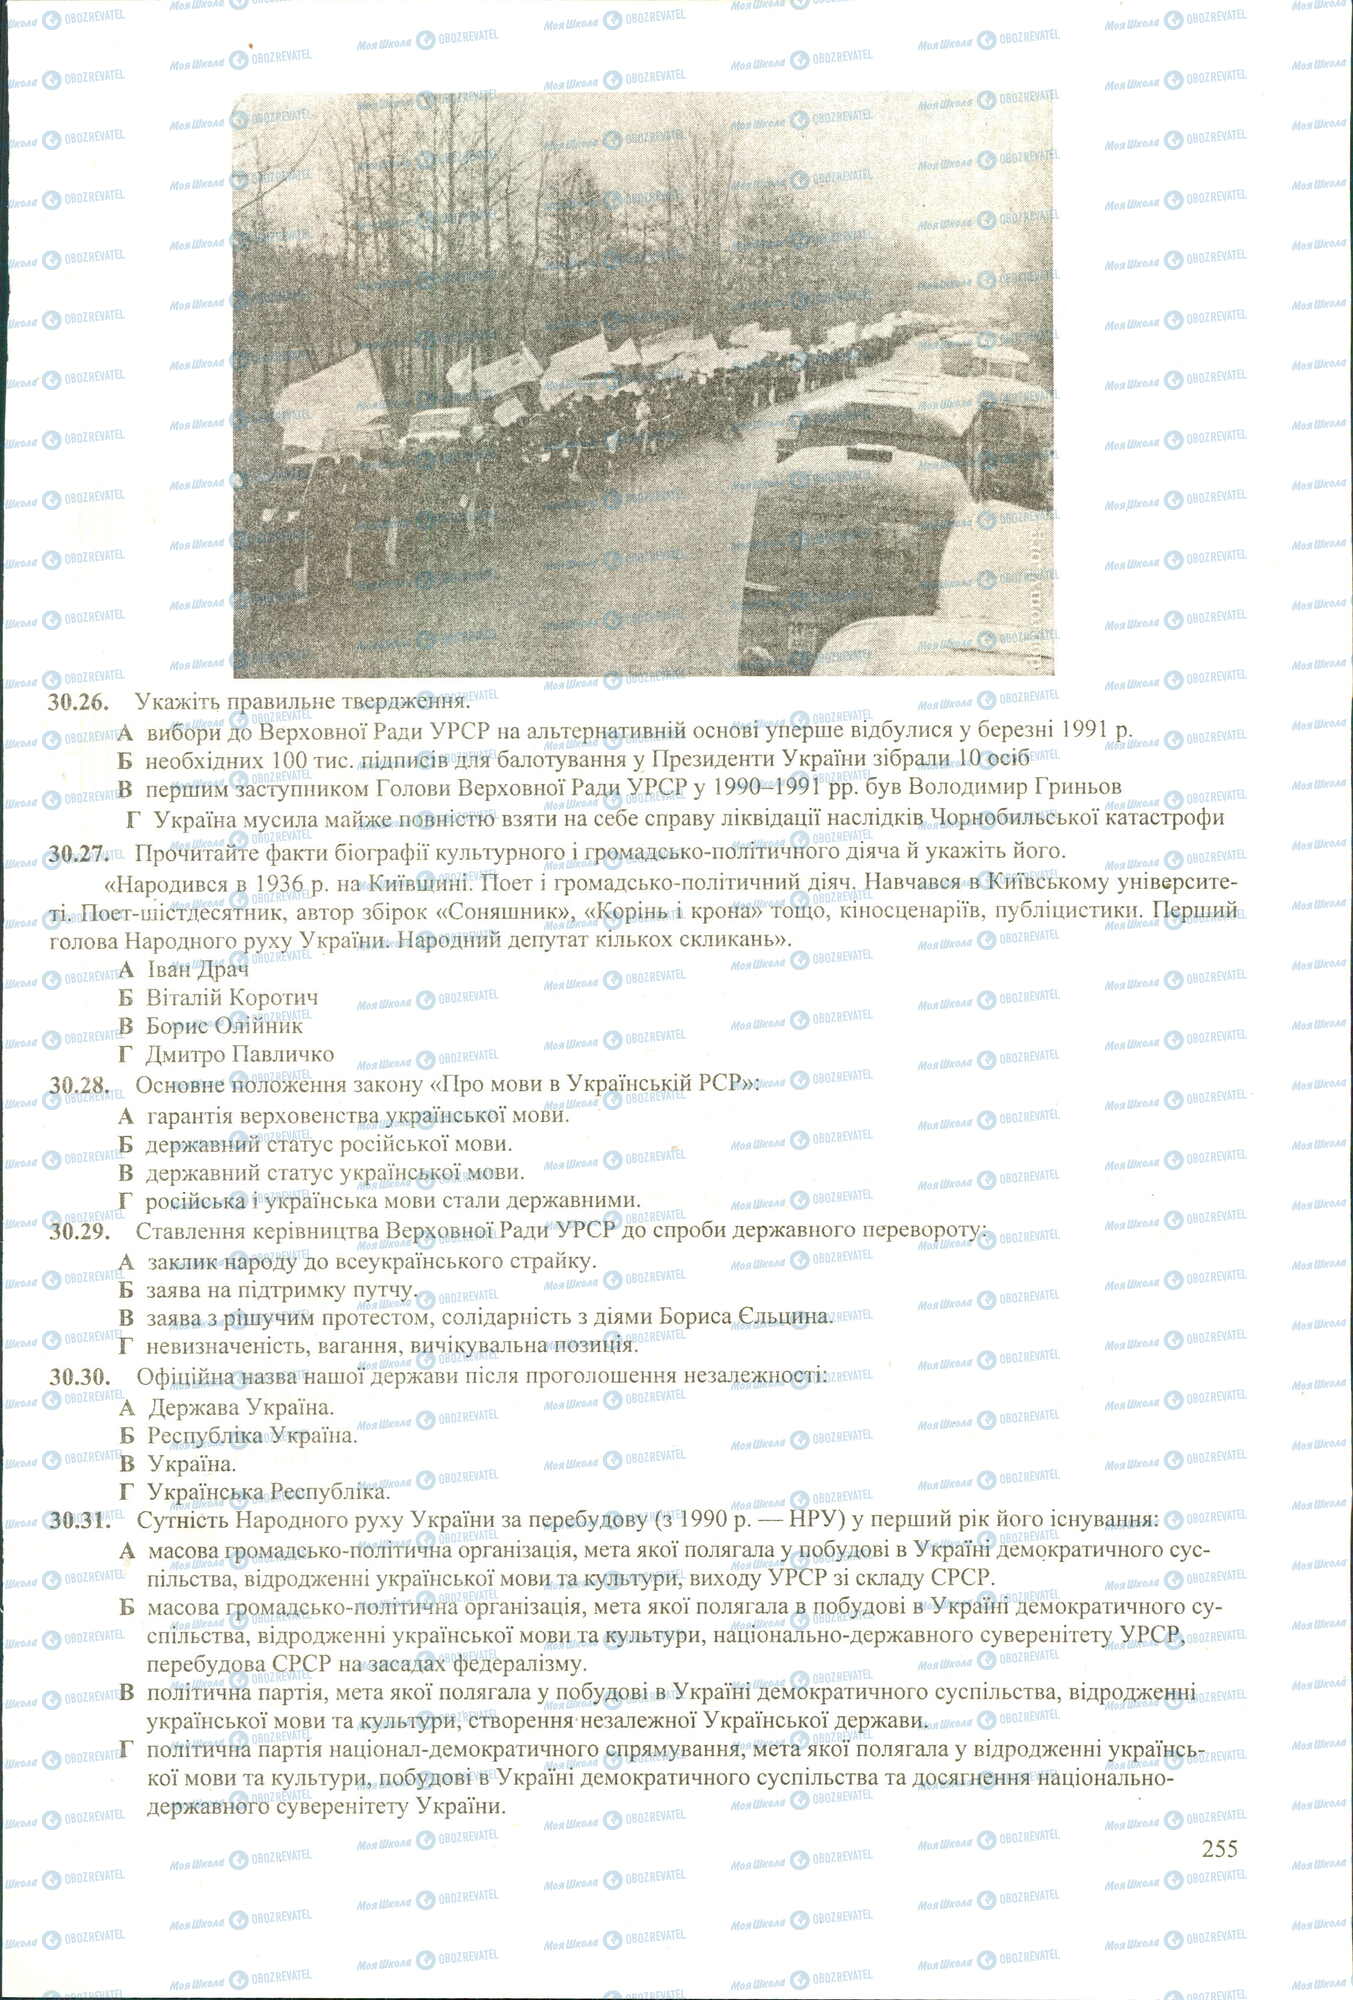 ЗНО История Украины 11 класс страница 26-31